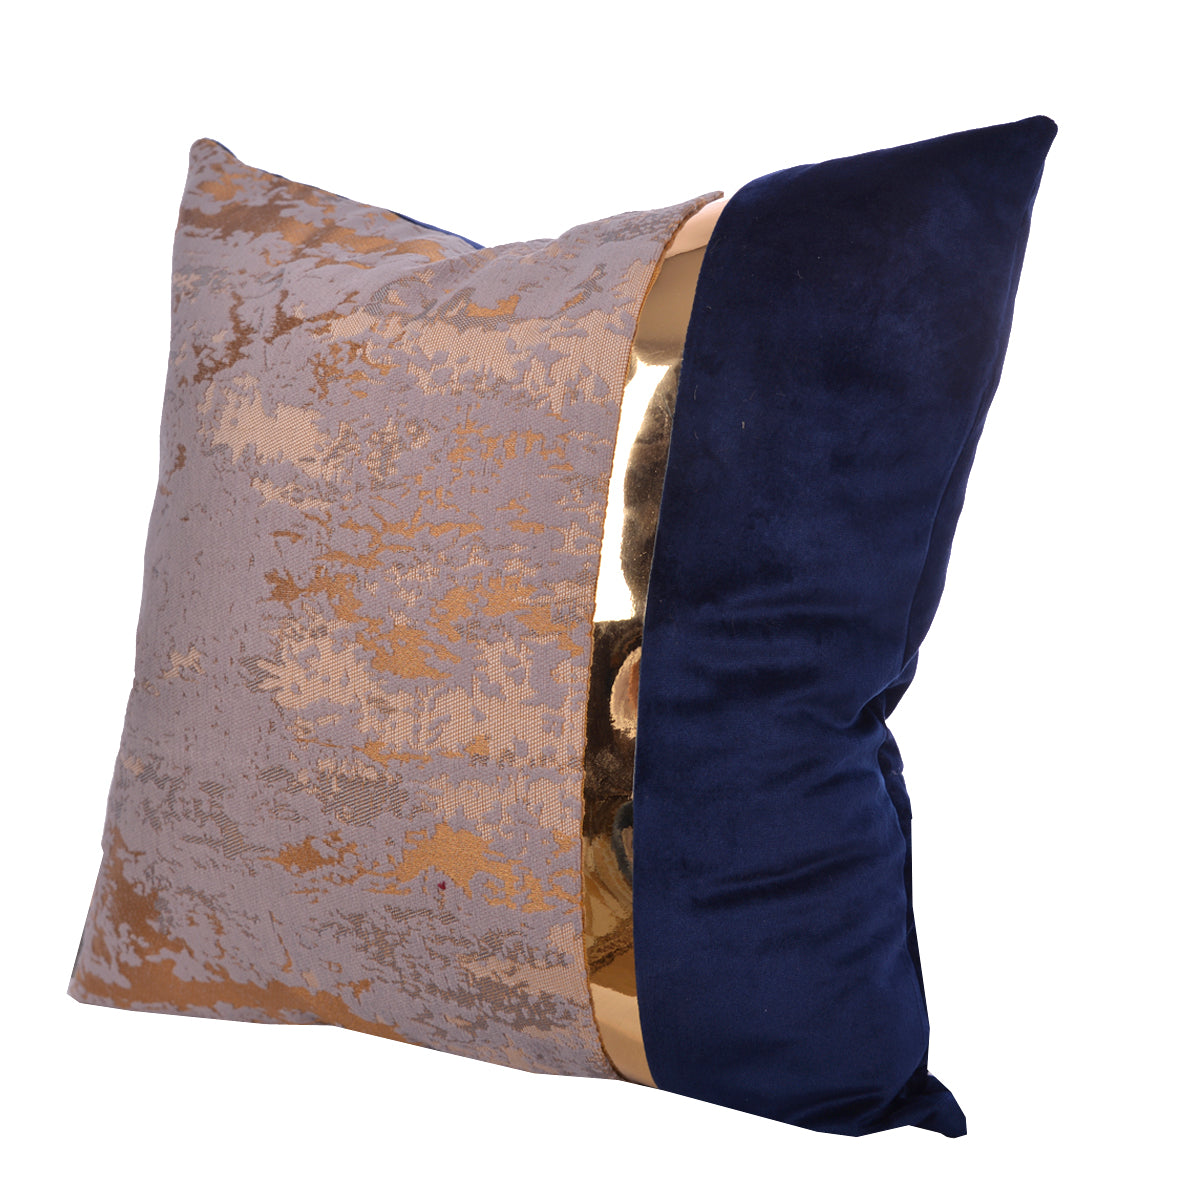 Luxury Velvet Throw Pillow Cover Blue & Gold Cushion Cover)